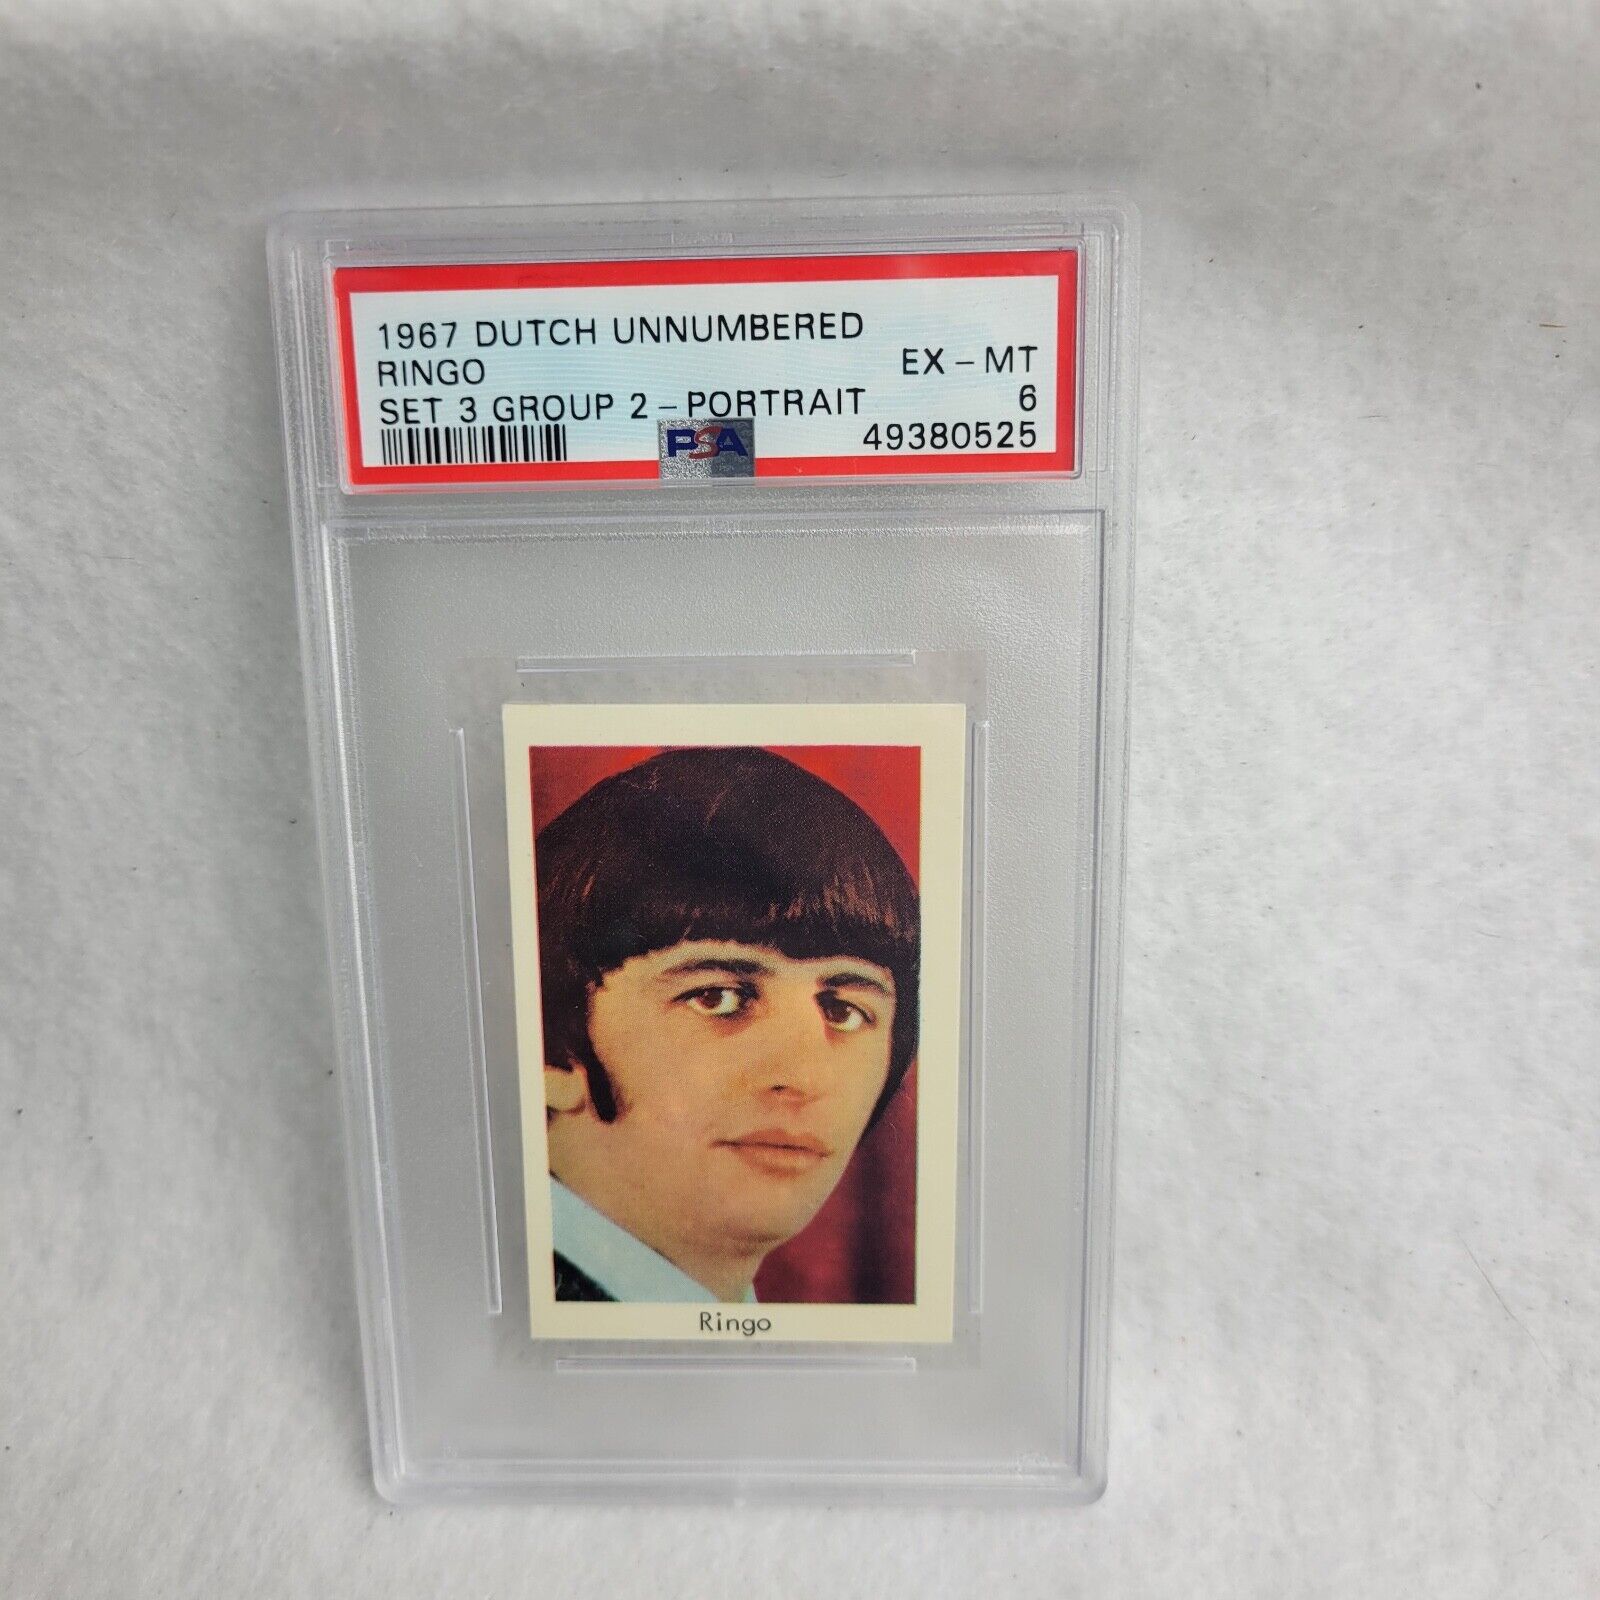 1967 Ringo Starr Portrait Card PSA 6 Dutch Unnumbered Set 3 Group 2 Low Pop